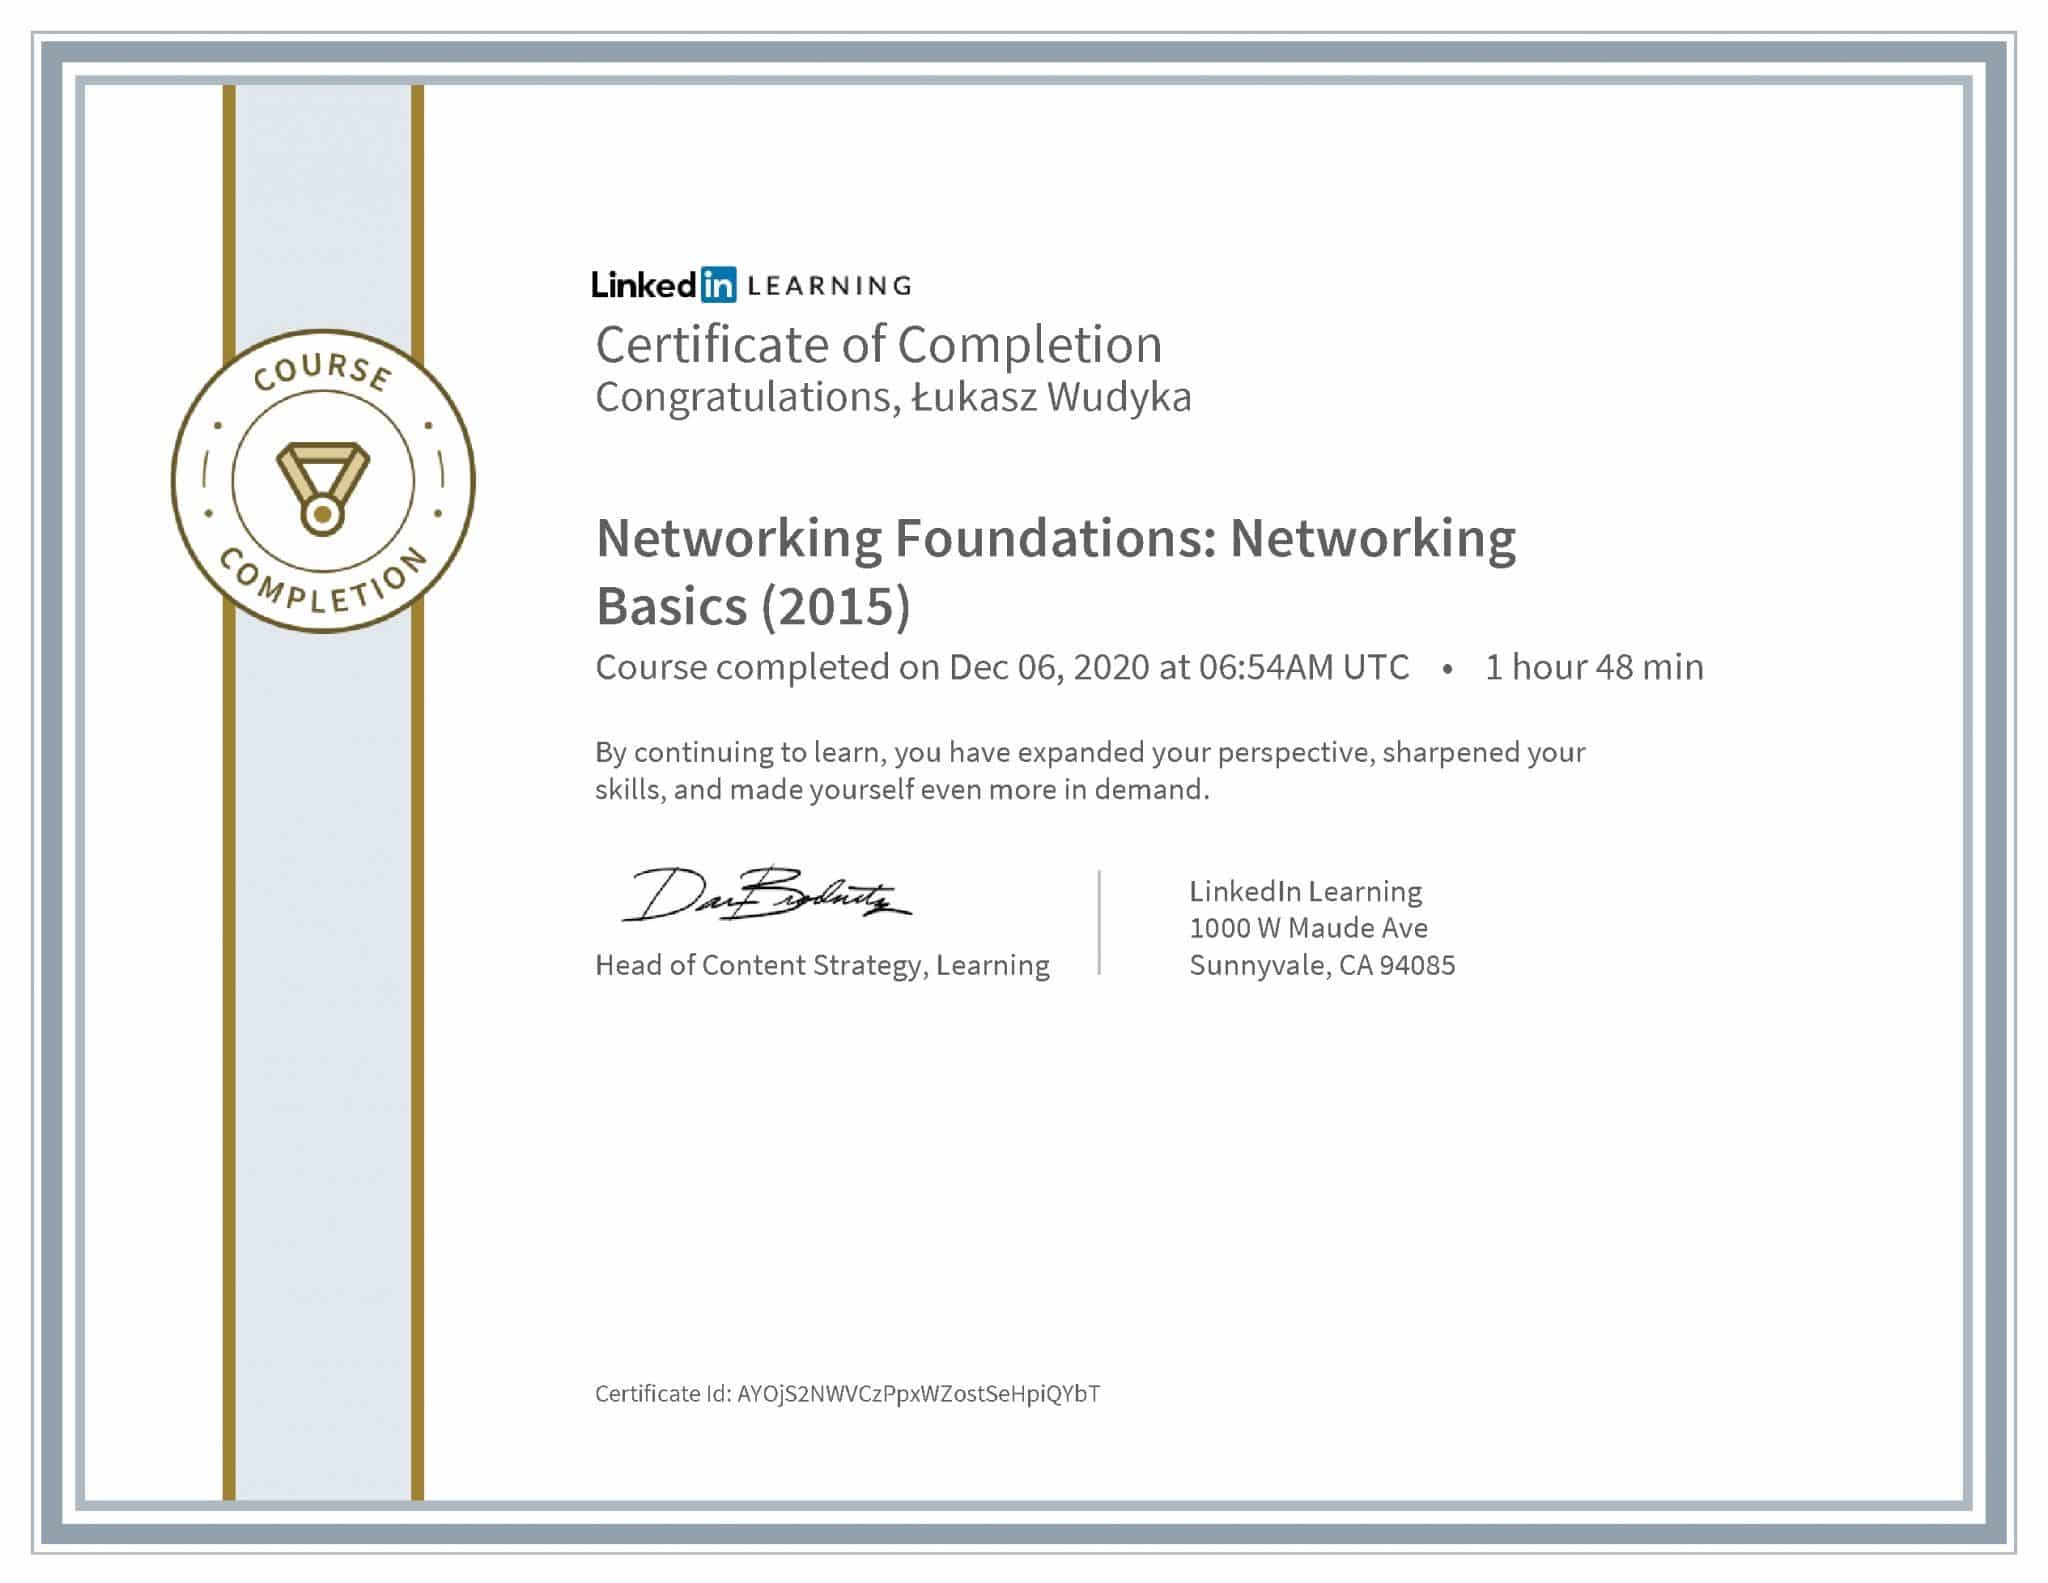 Łukasz Wudyka certyfikat LinkedIn Networking Foundations: Networking Basics (2015)